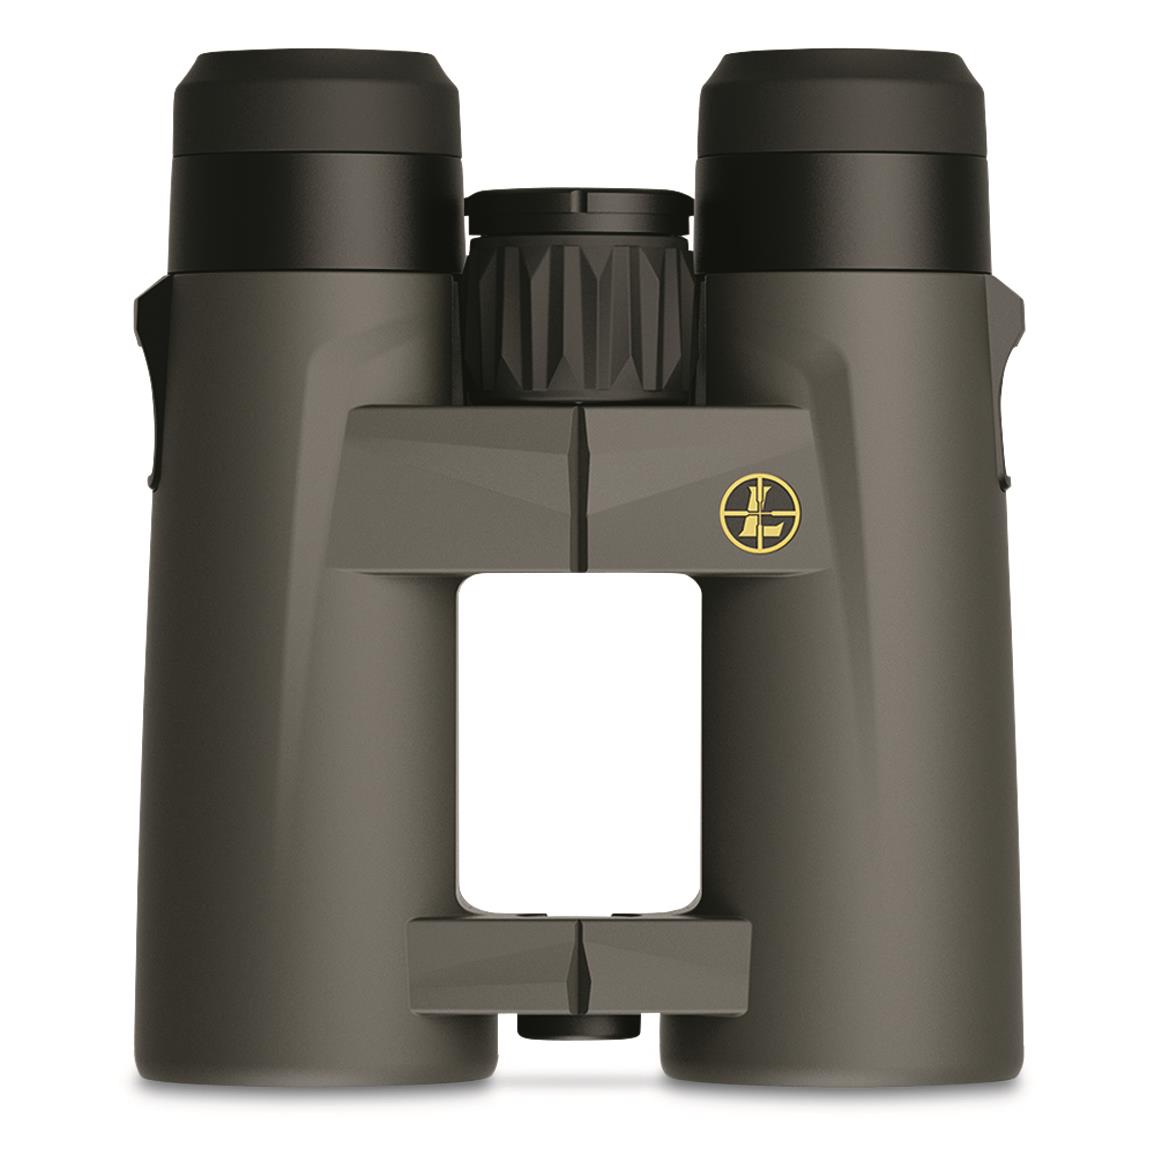 Leupold BX-4 Pro Guide HD Gen 2 8x42mm Binoculars